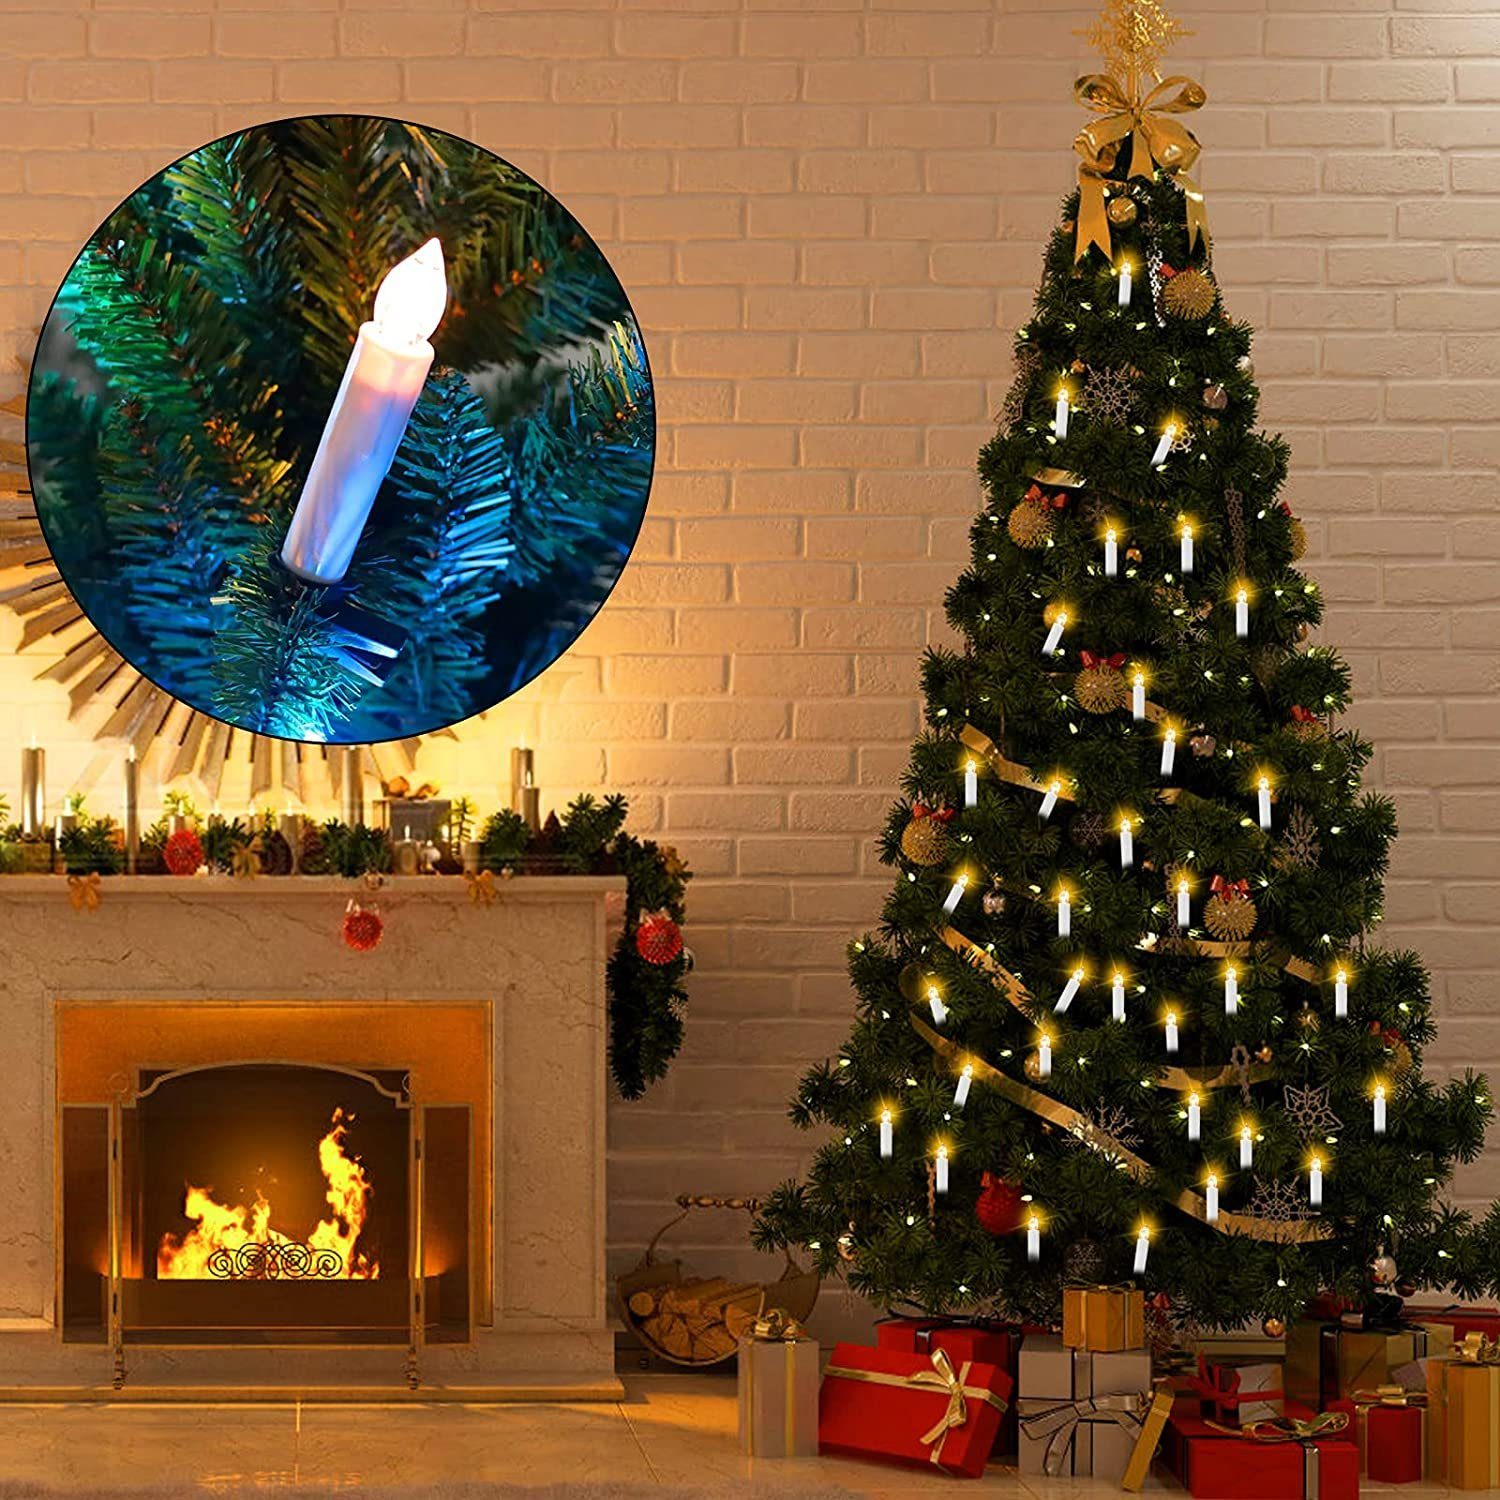 Gotoll LED-Christbaumkerzen 30er, 30 flammig Weinachtsbaumkerzen kabellos Beleuchtung Weihnachtskerzen